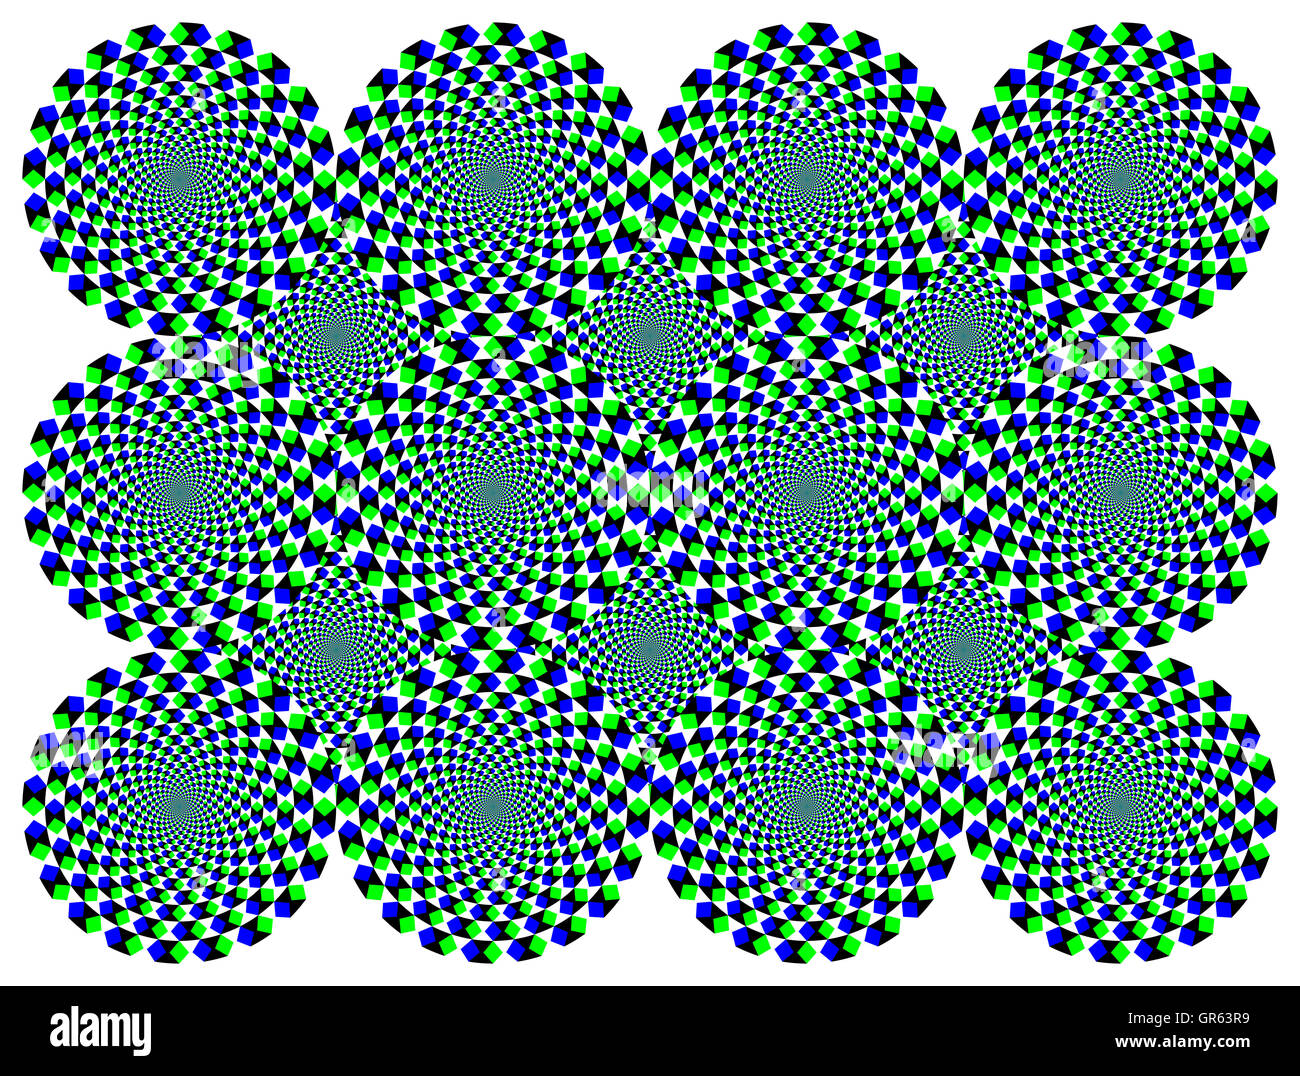 Muelas de Diamante giratorio ilusión de movimiento. Las ruedas con diamantes azules y verdes parecen moverse a la derecha al mover los ojos. Foto de stock